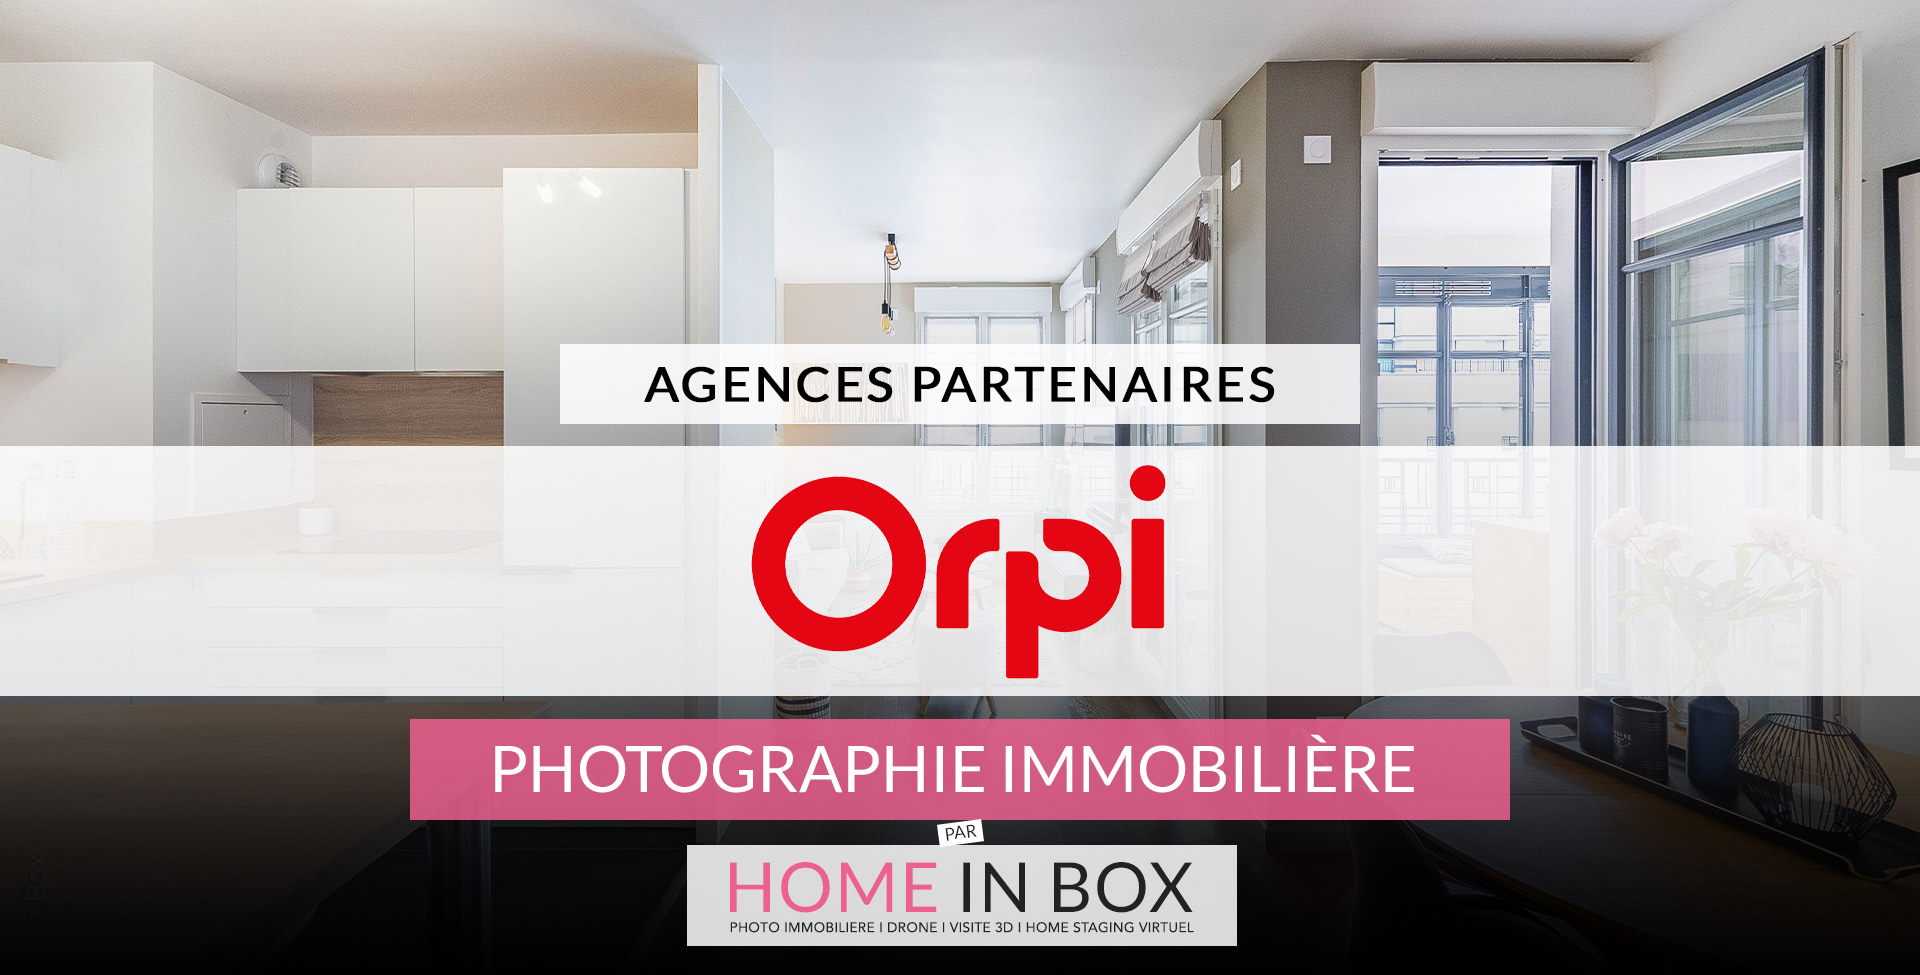 Agences Partenaires Réseau Orpi | Home in Box